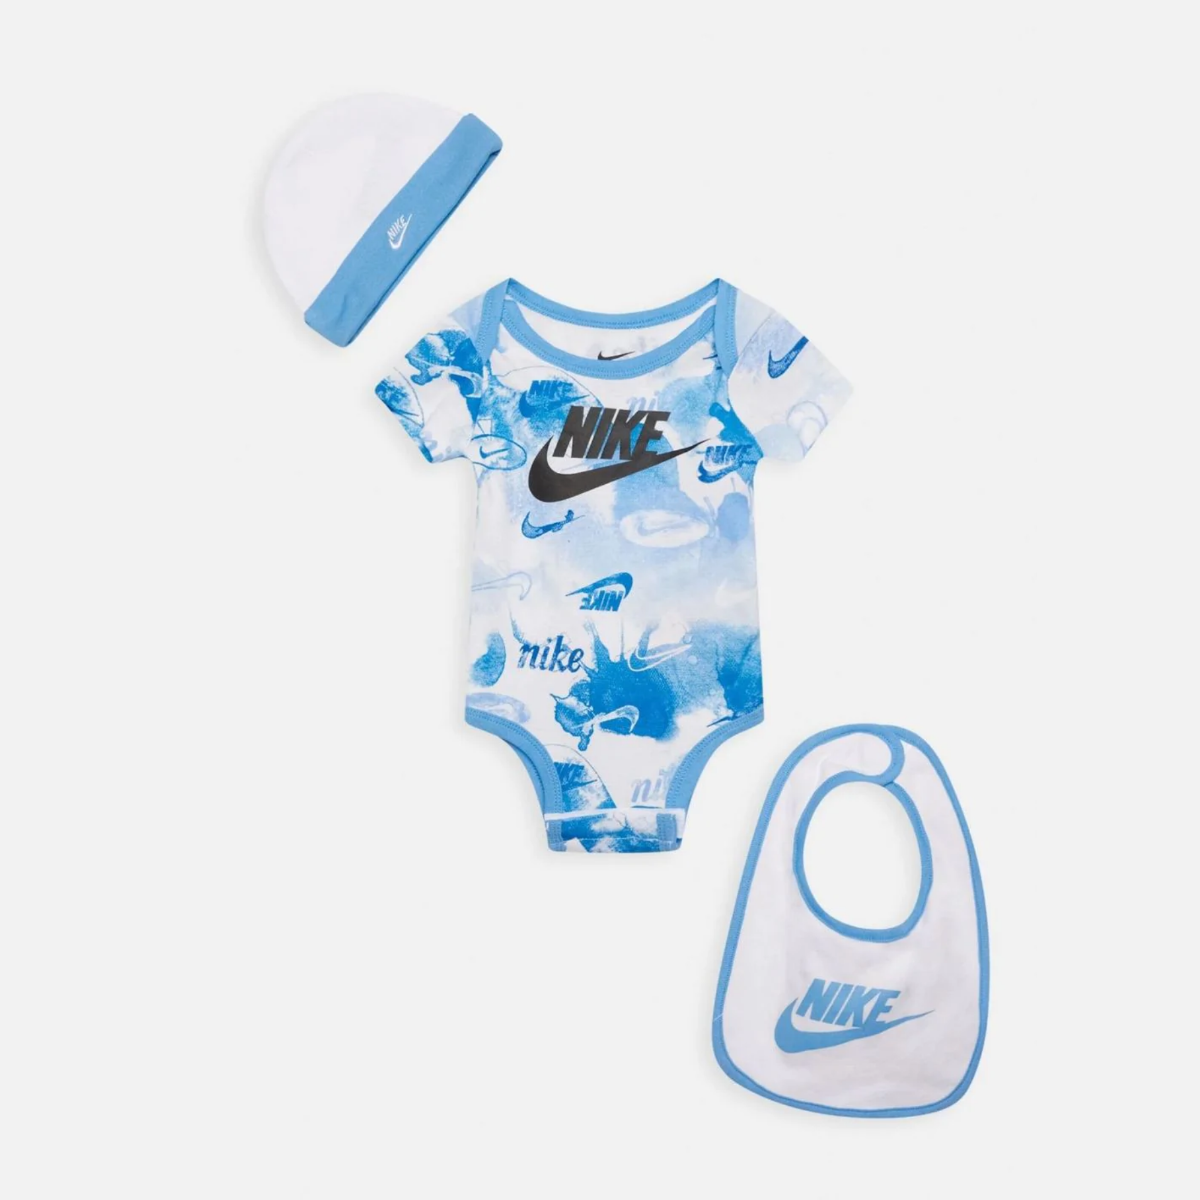 Ensemble Nike Sportswear bébé - Blanc/Bleu